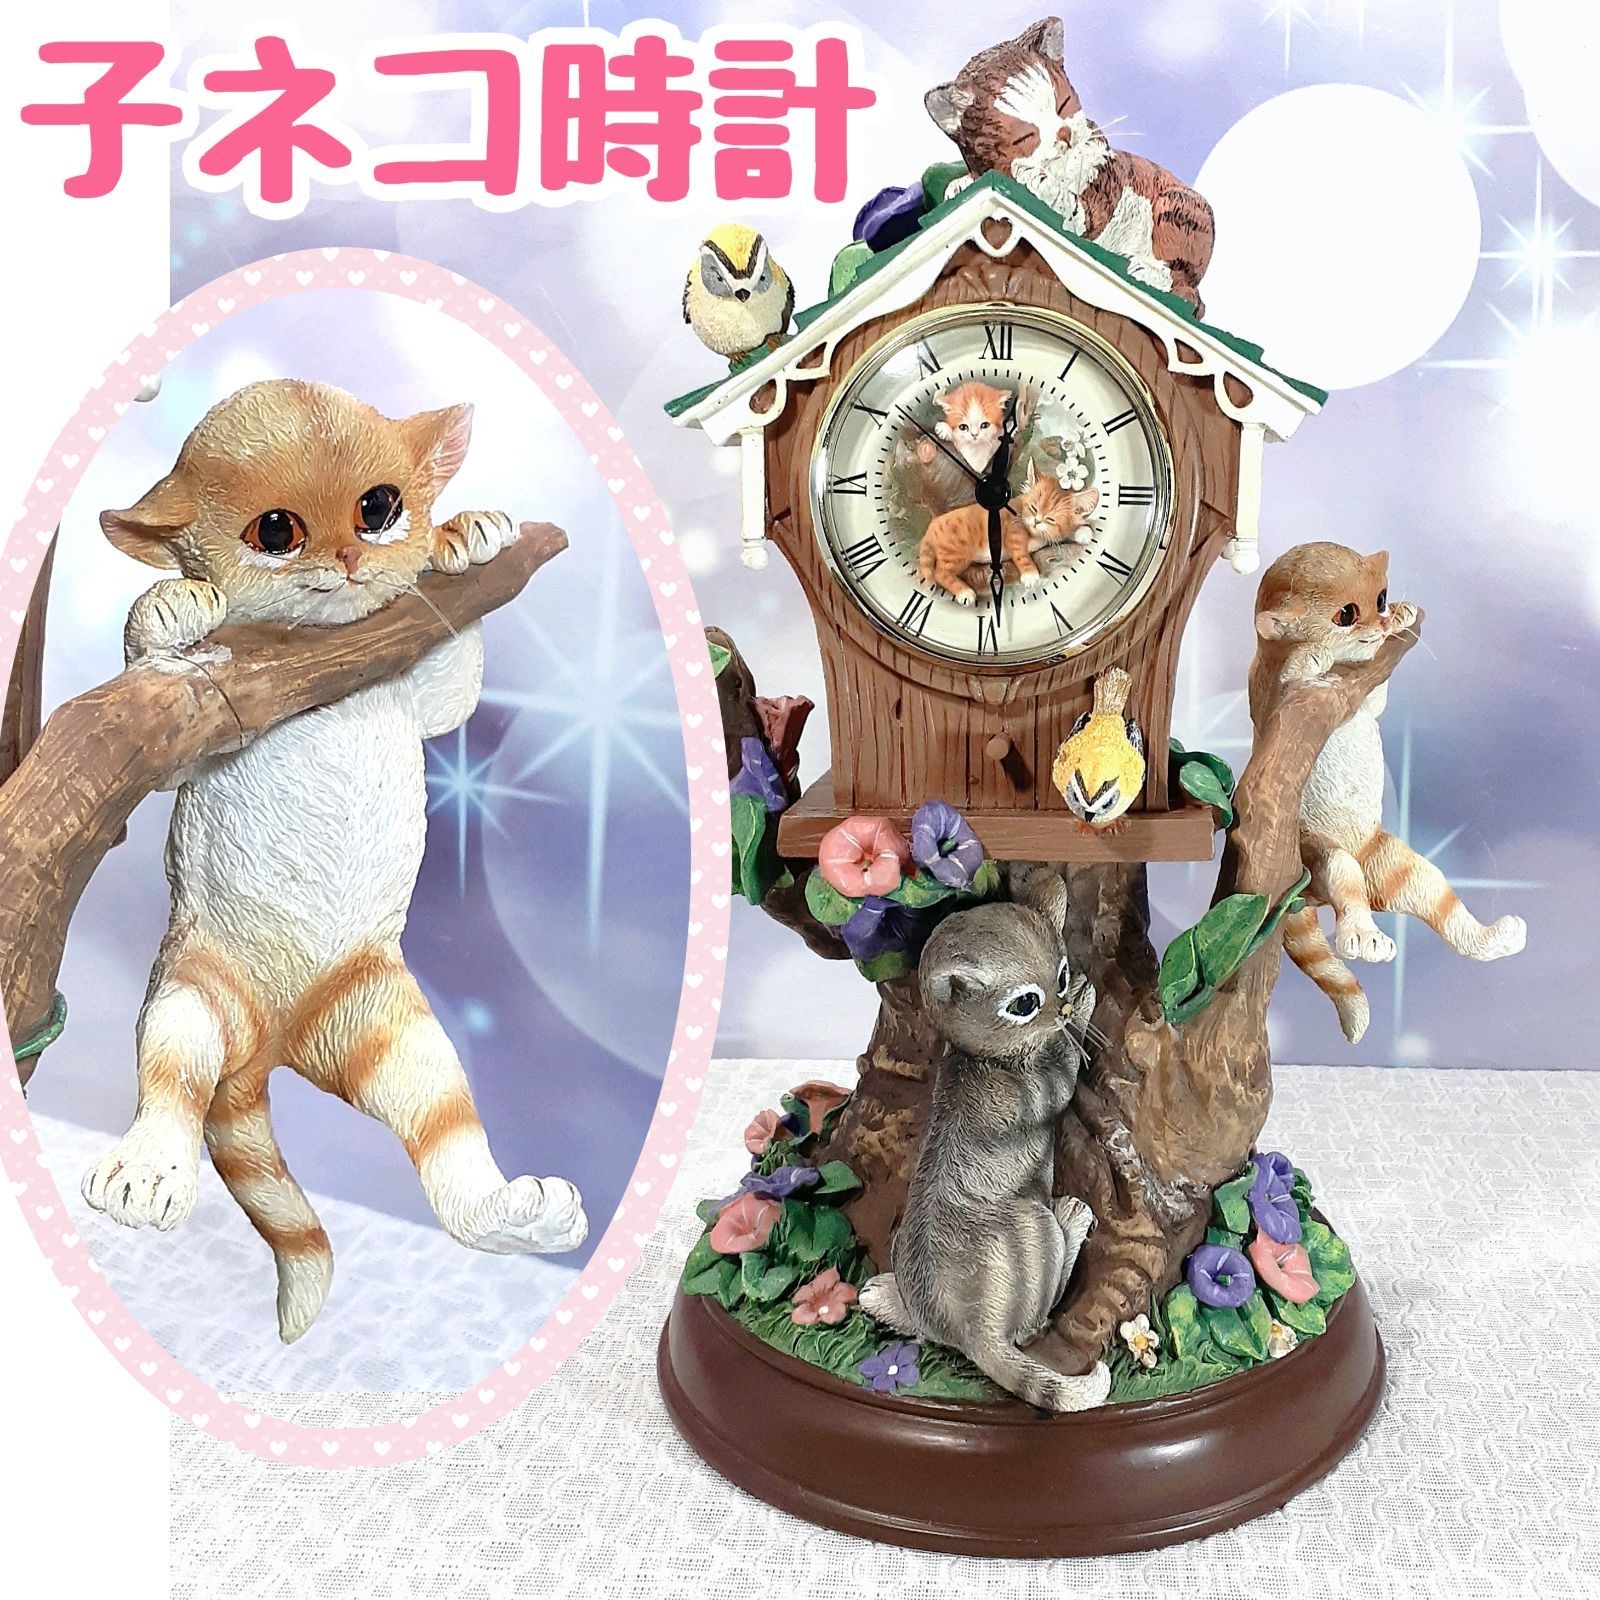 予約販売品 mm-4252⑧【KICORI 置時計 ネコの親子 掛け時計 置き時計 